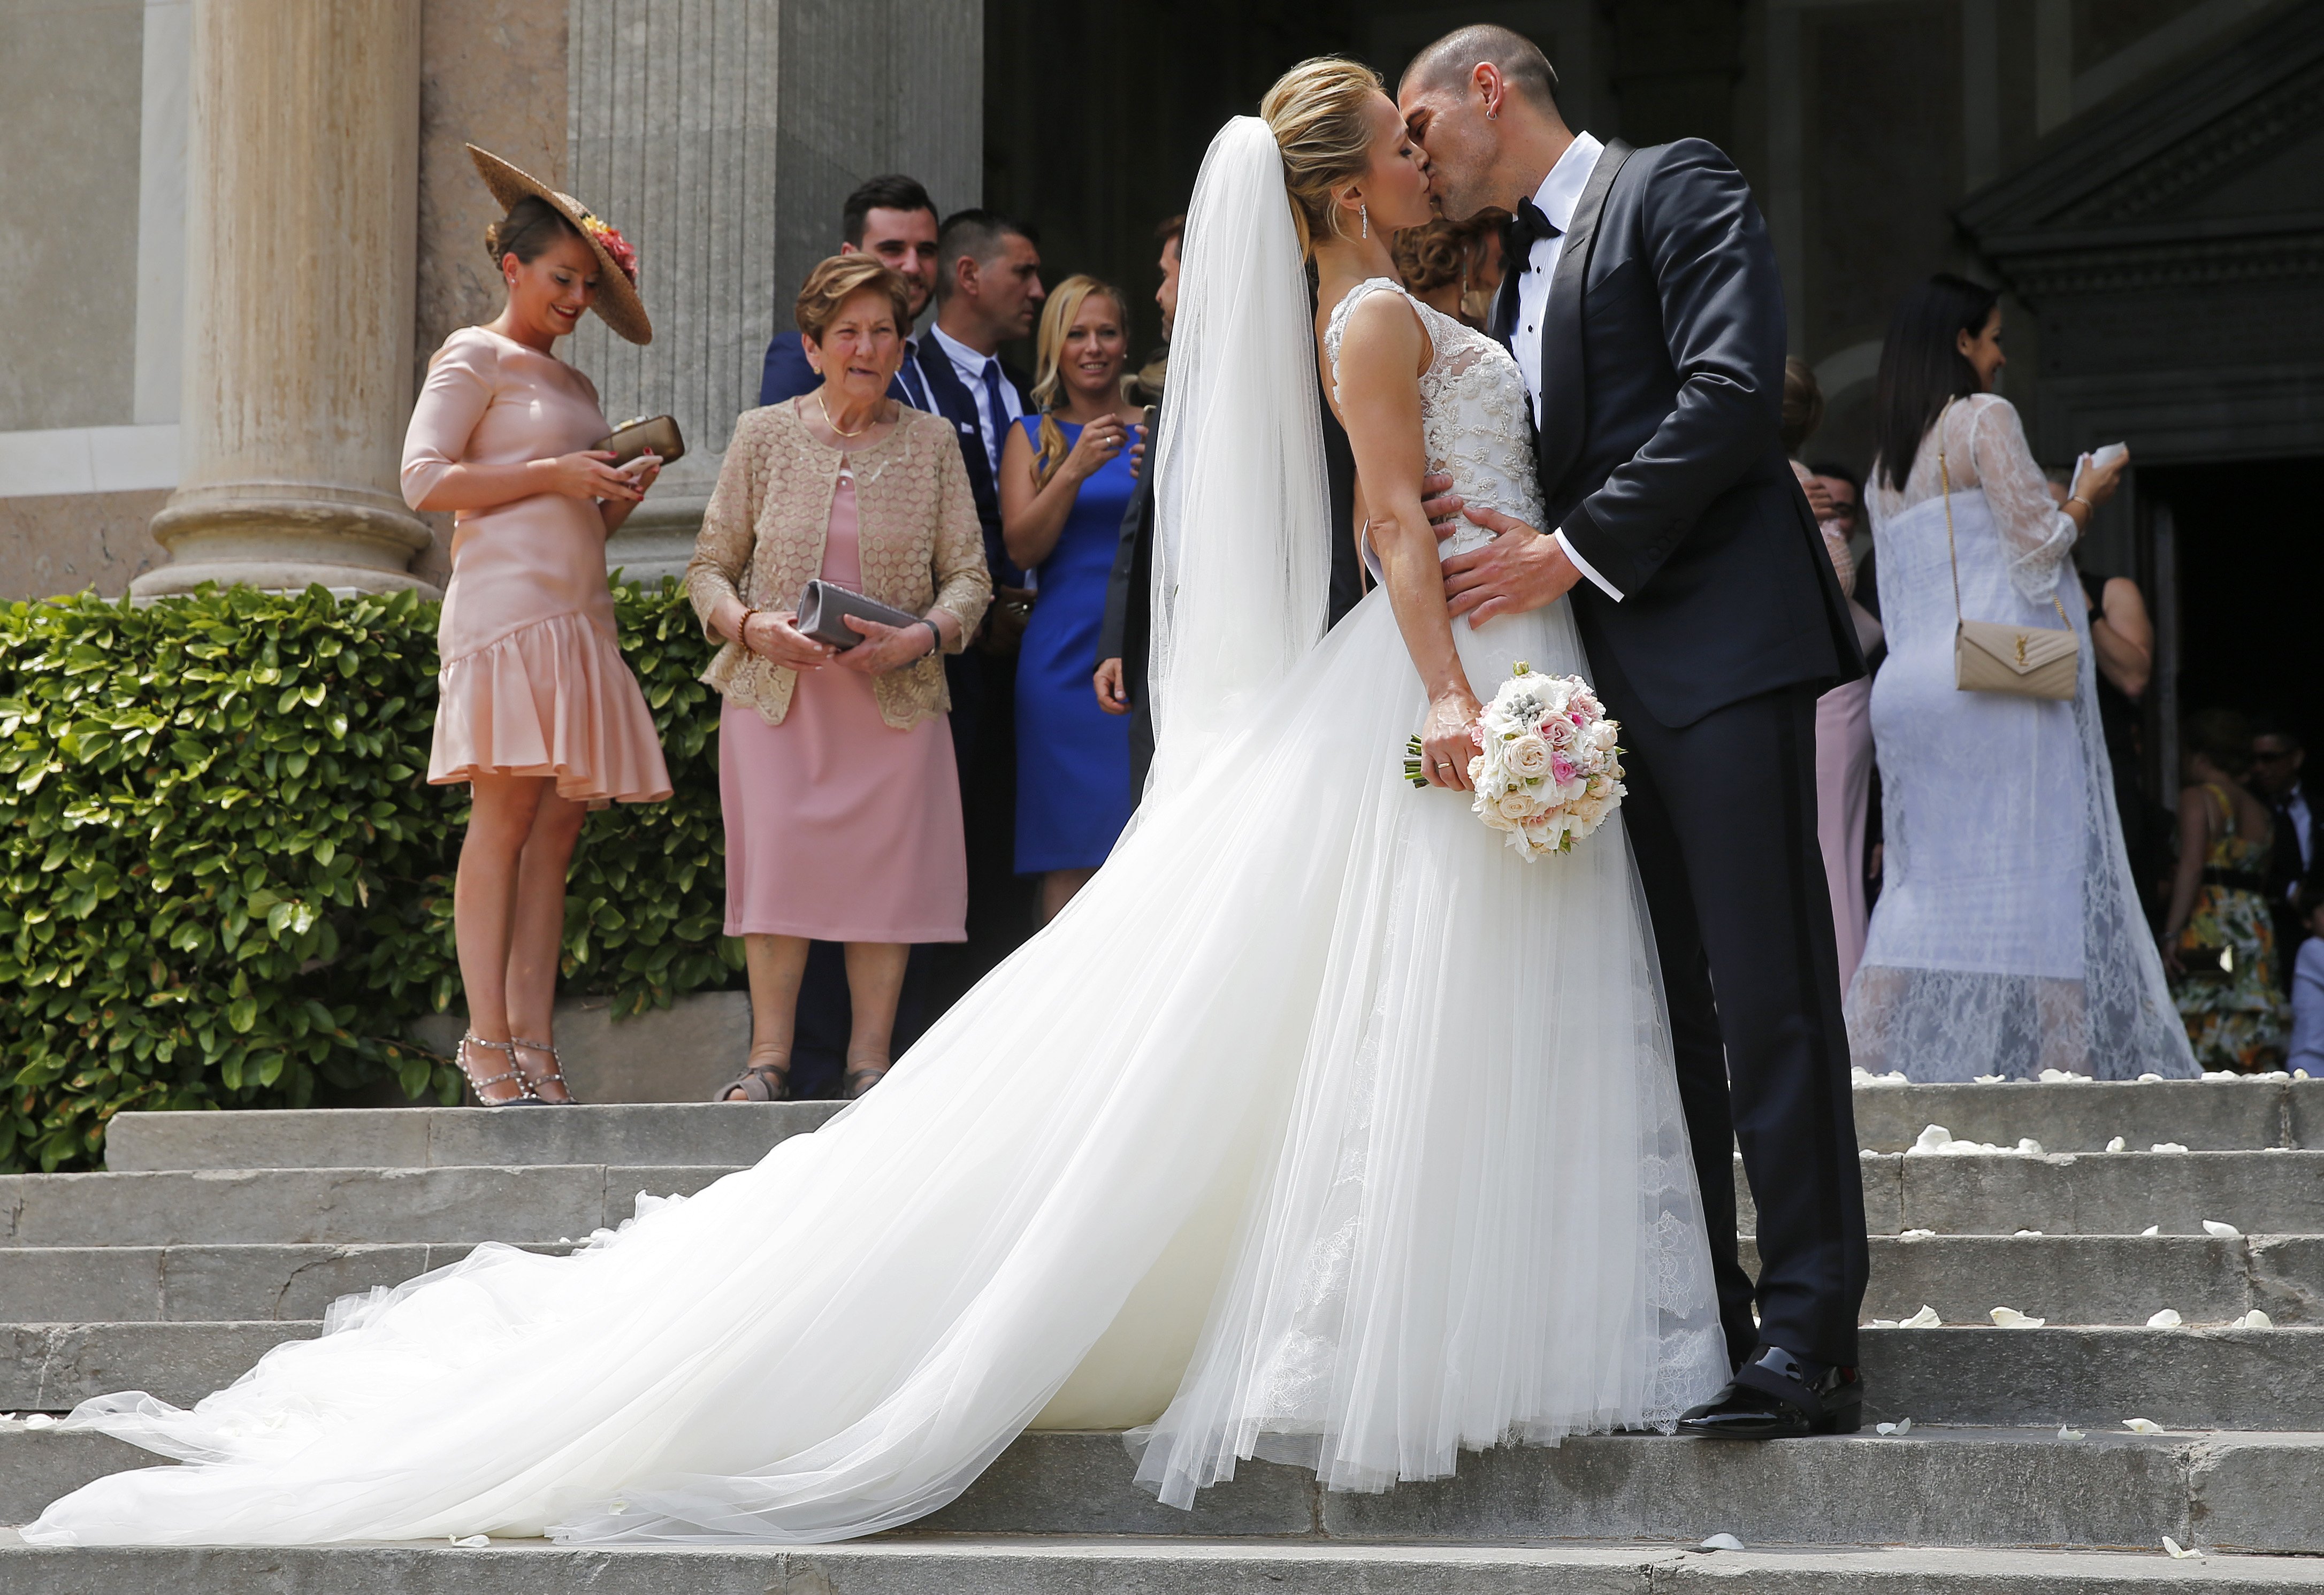 La espectacular boda culé de Víctor Valdés y Yolanda Cardona